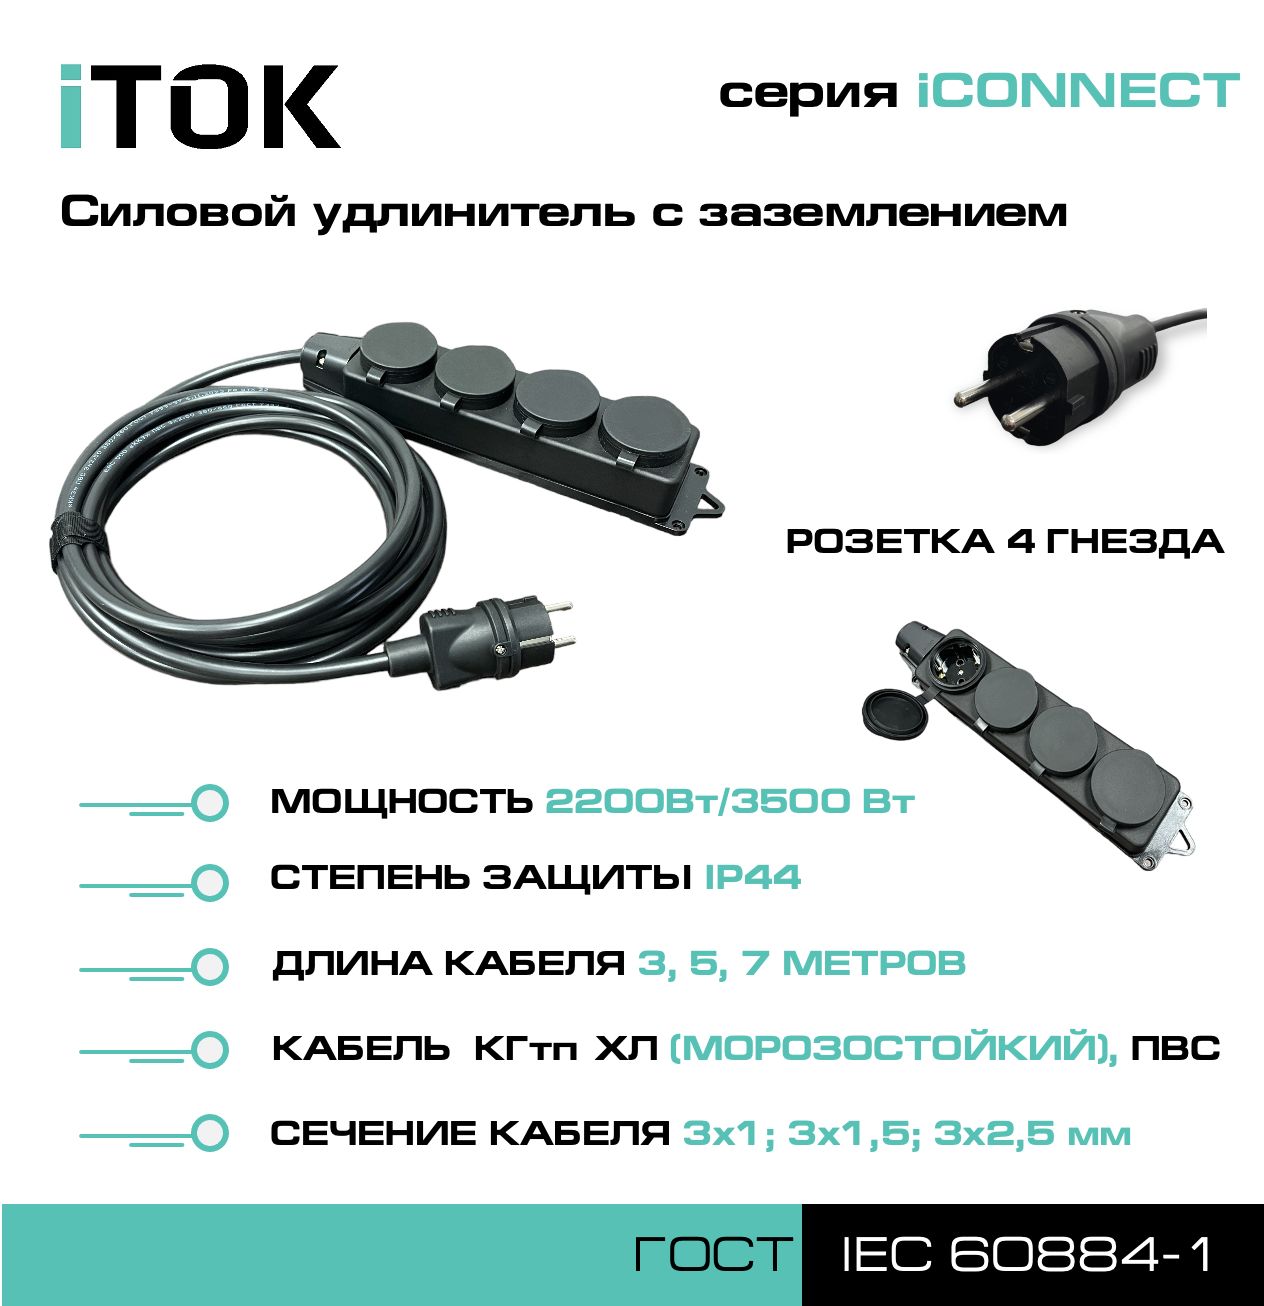 Удлинитель с заземлением серии iTOK iCONNECT ПВС 3х1 мм 4 гнезда IP44 5 м